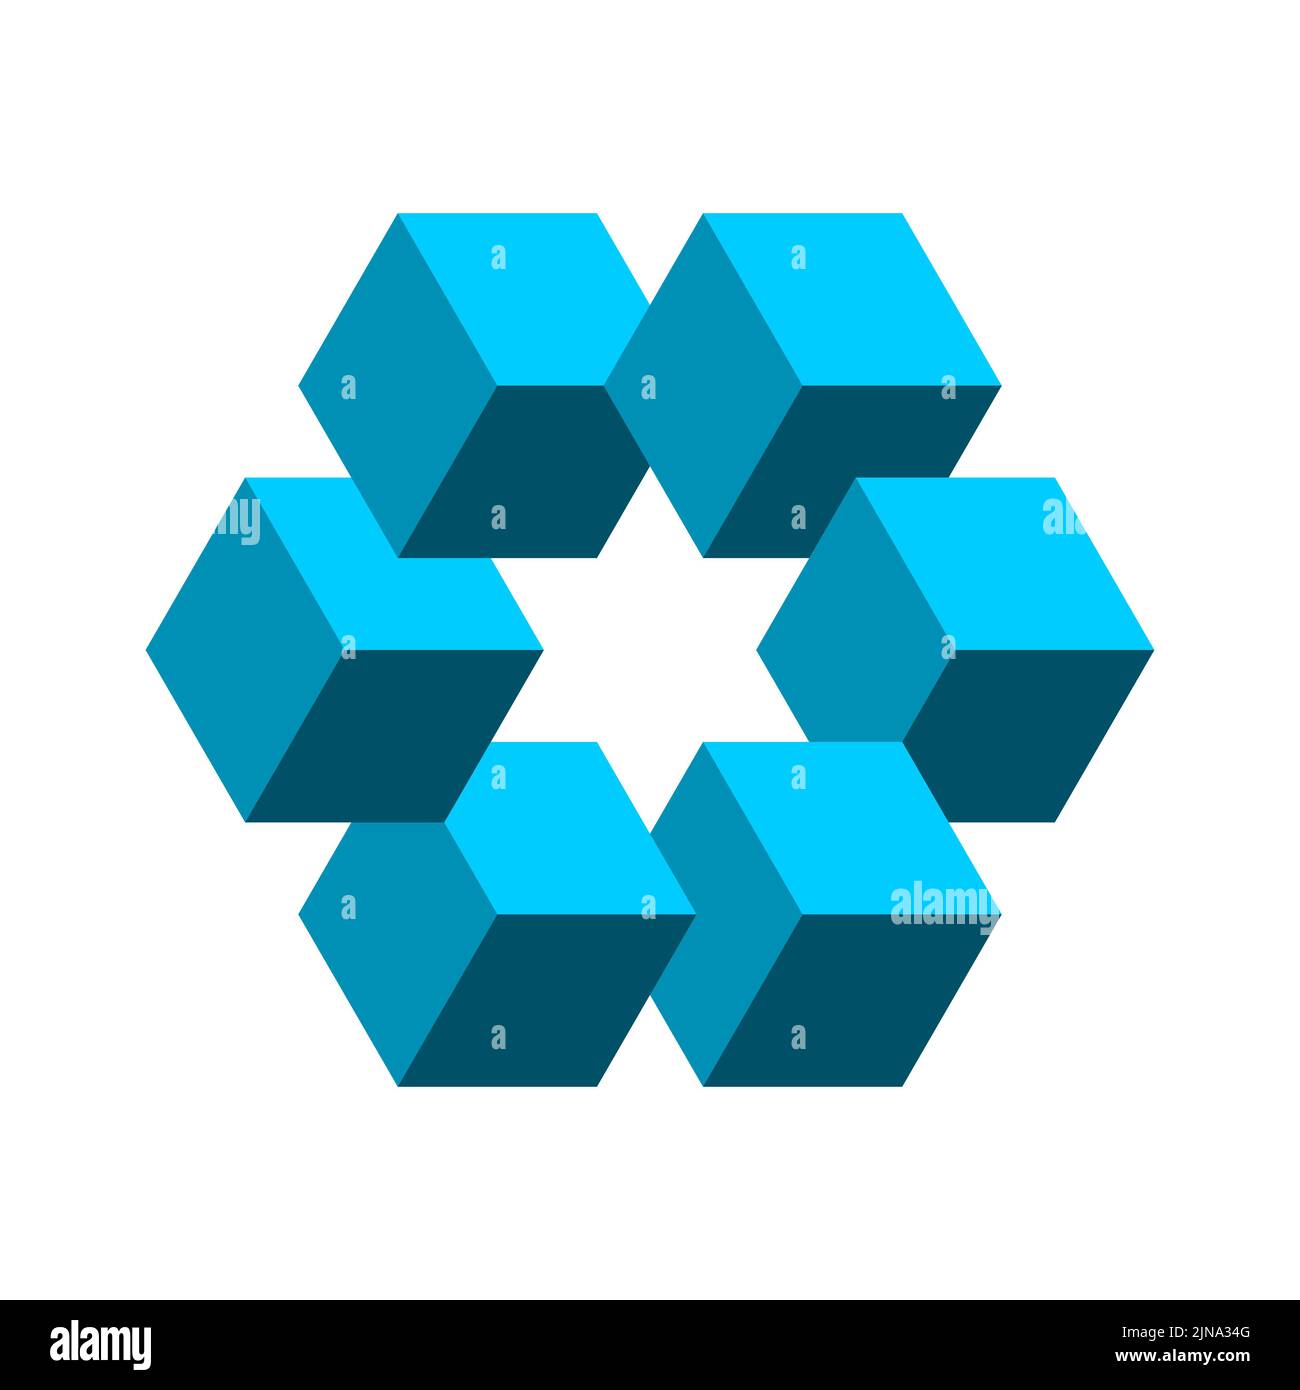 Forma impossibile fatta di cubetti con una stella al centro. Geometria sacra. I 3D cubi blu costituiscono un poligono complesso. Concetto di logo isometrico. Vettore Illustrazione Vettoriale